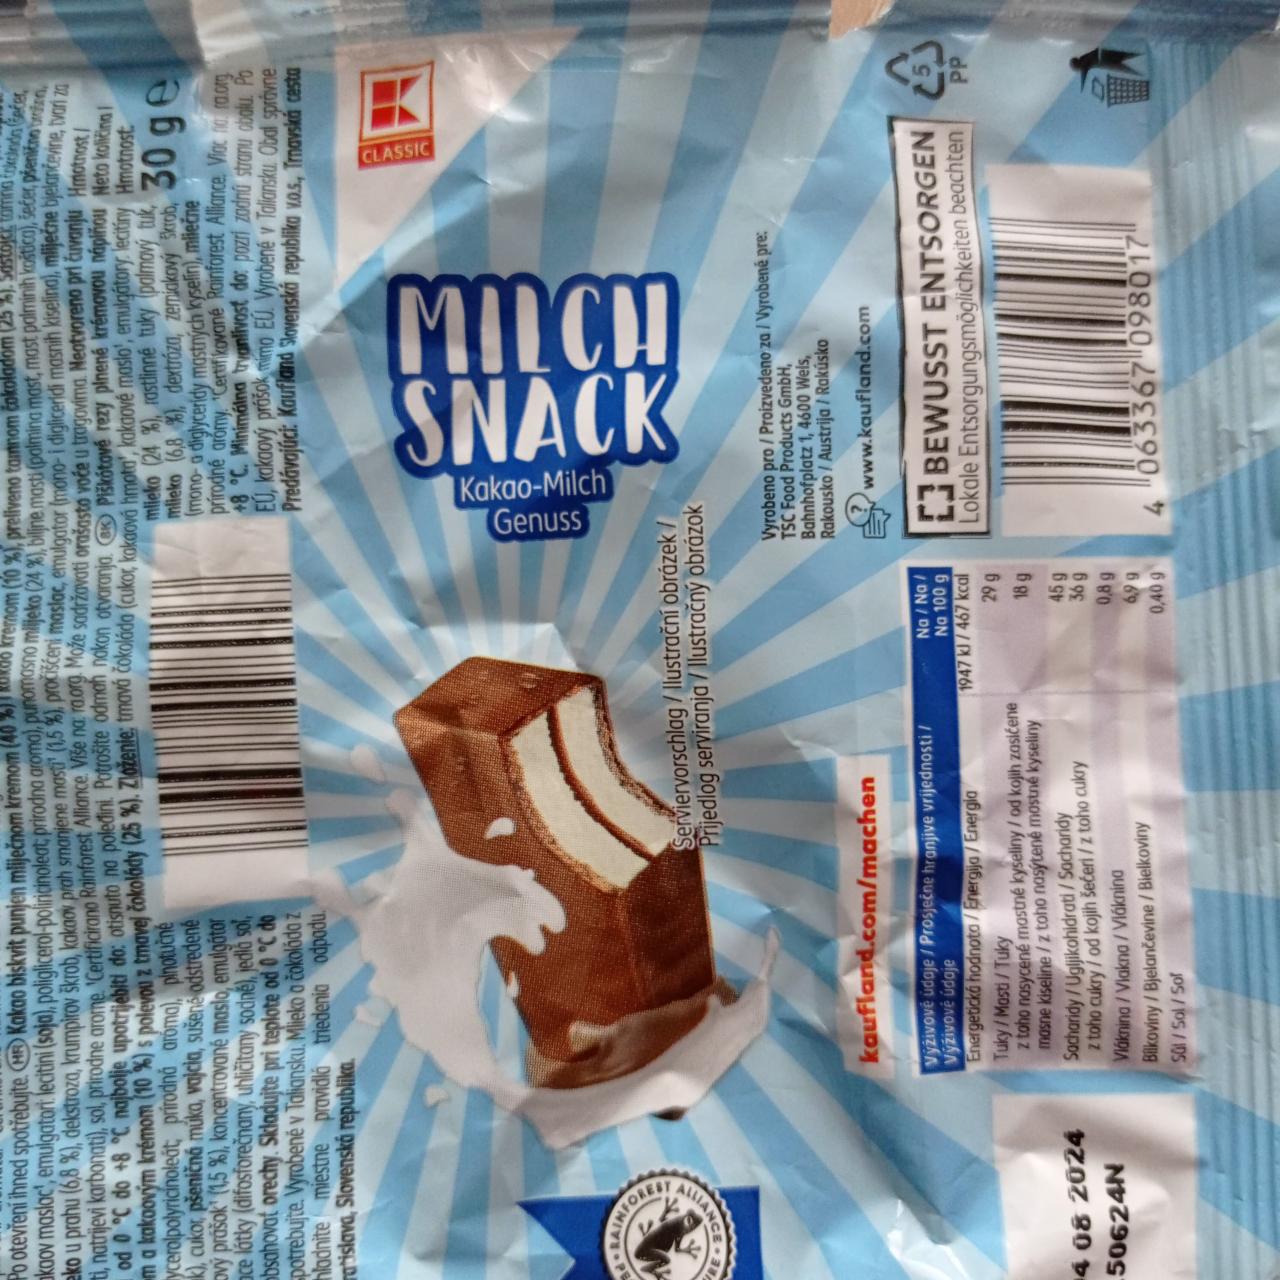 Fotografie - Milch snack kakao-milch Genuss K-Classic